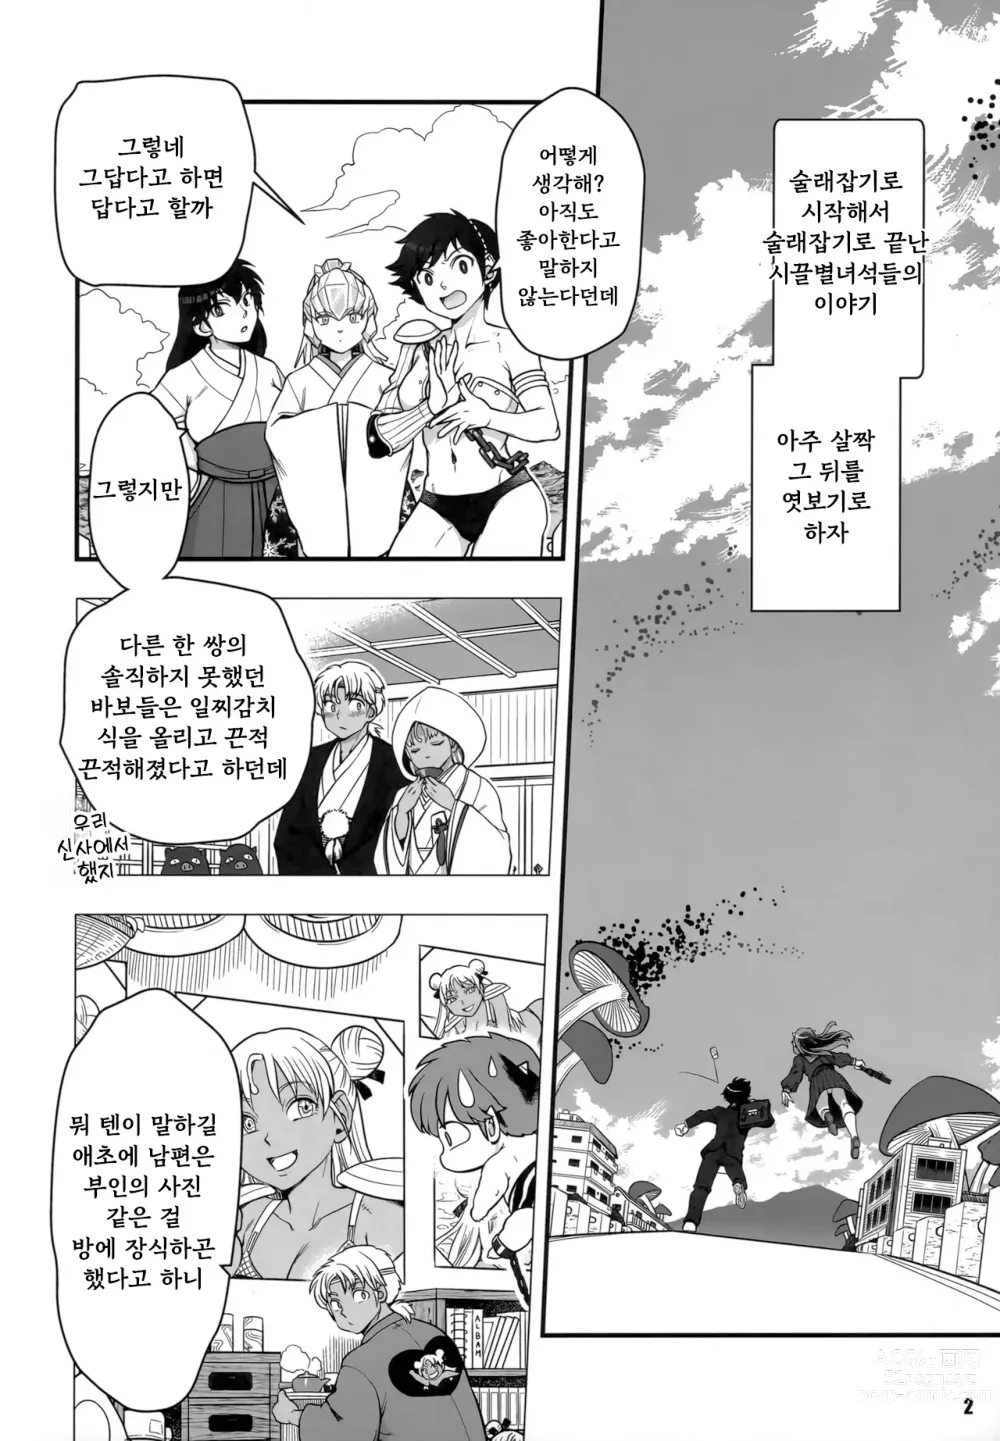 Page 2 of doujinshi Urusei Yatsura Epilogue of Boy meets Girl